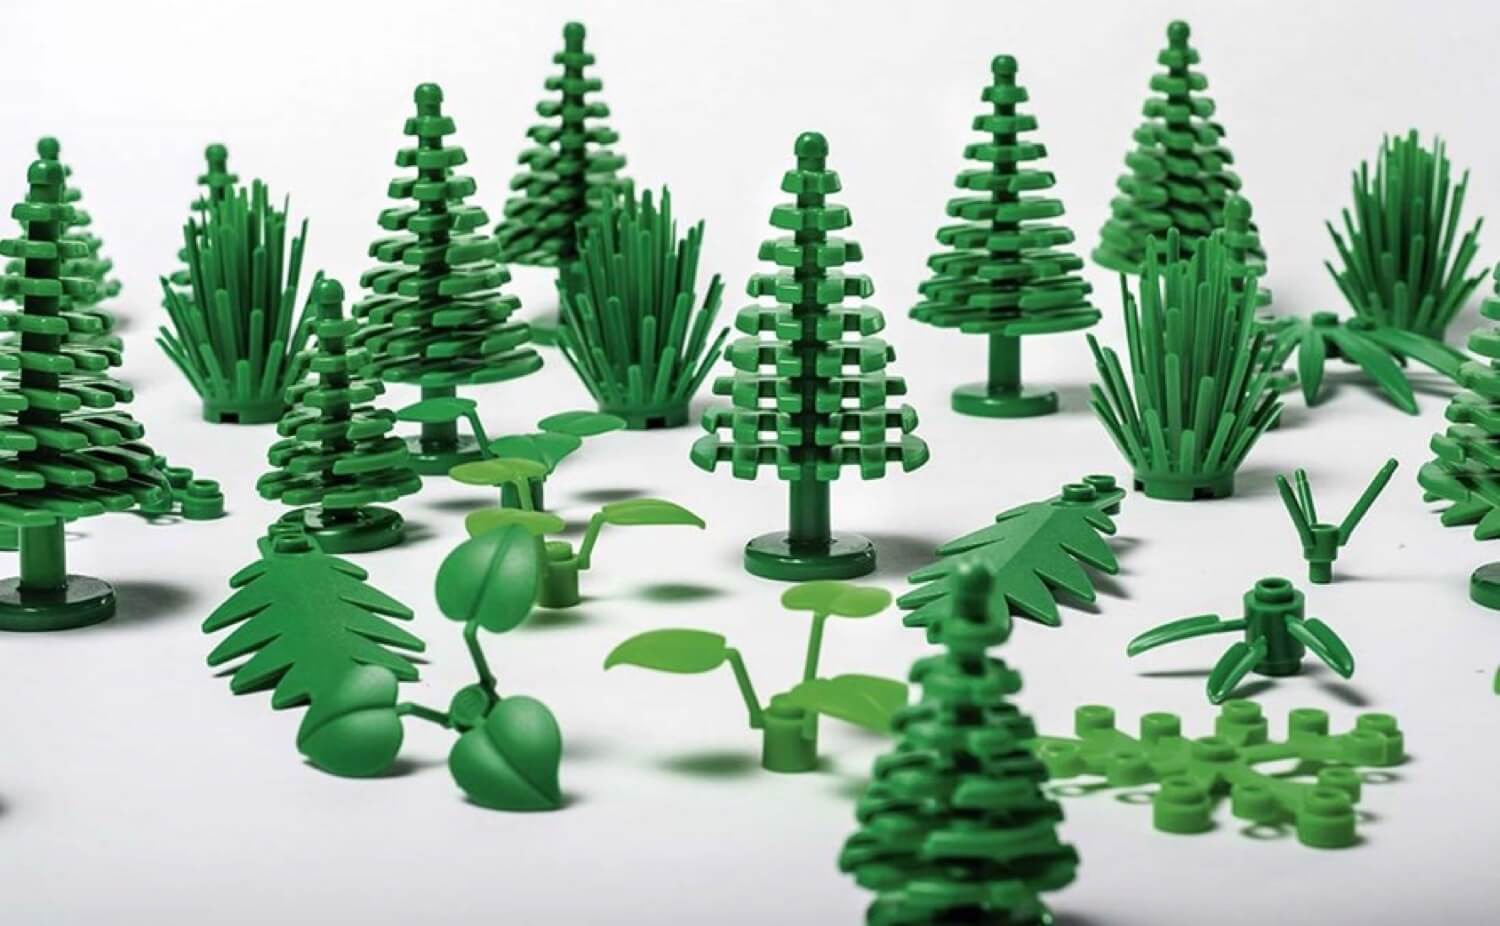 LEGO i gang med at lave blokke af planter